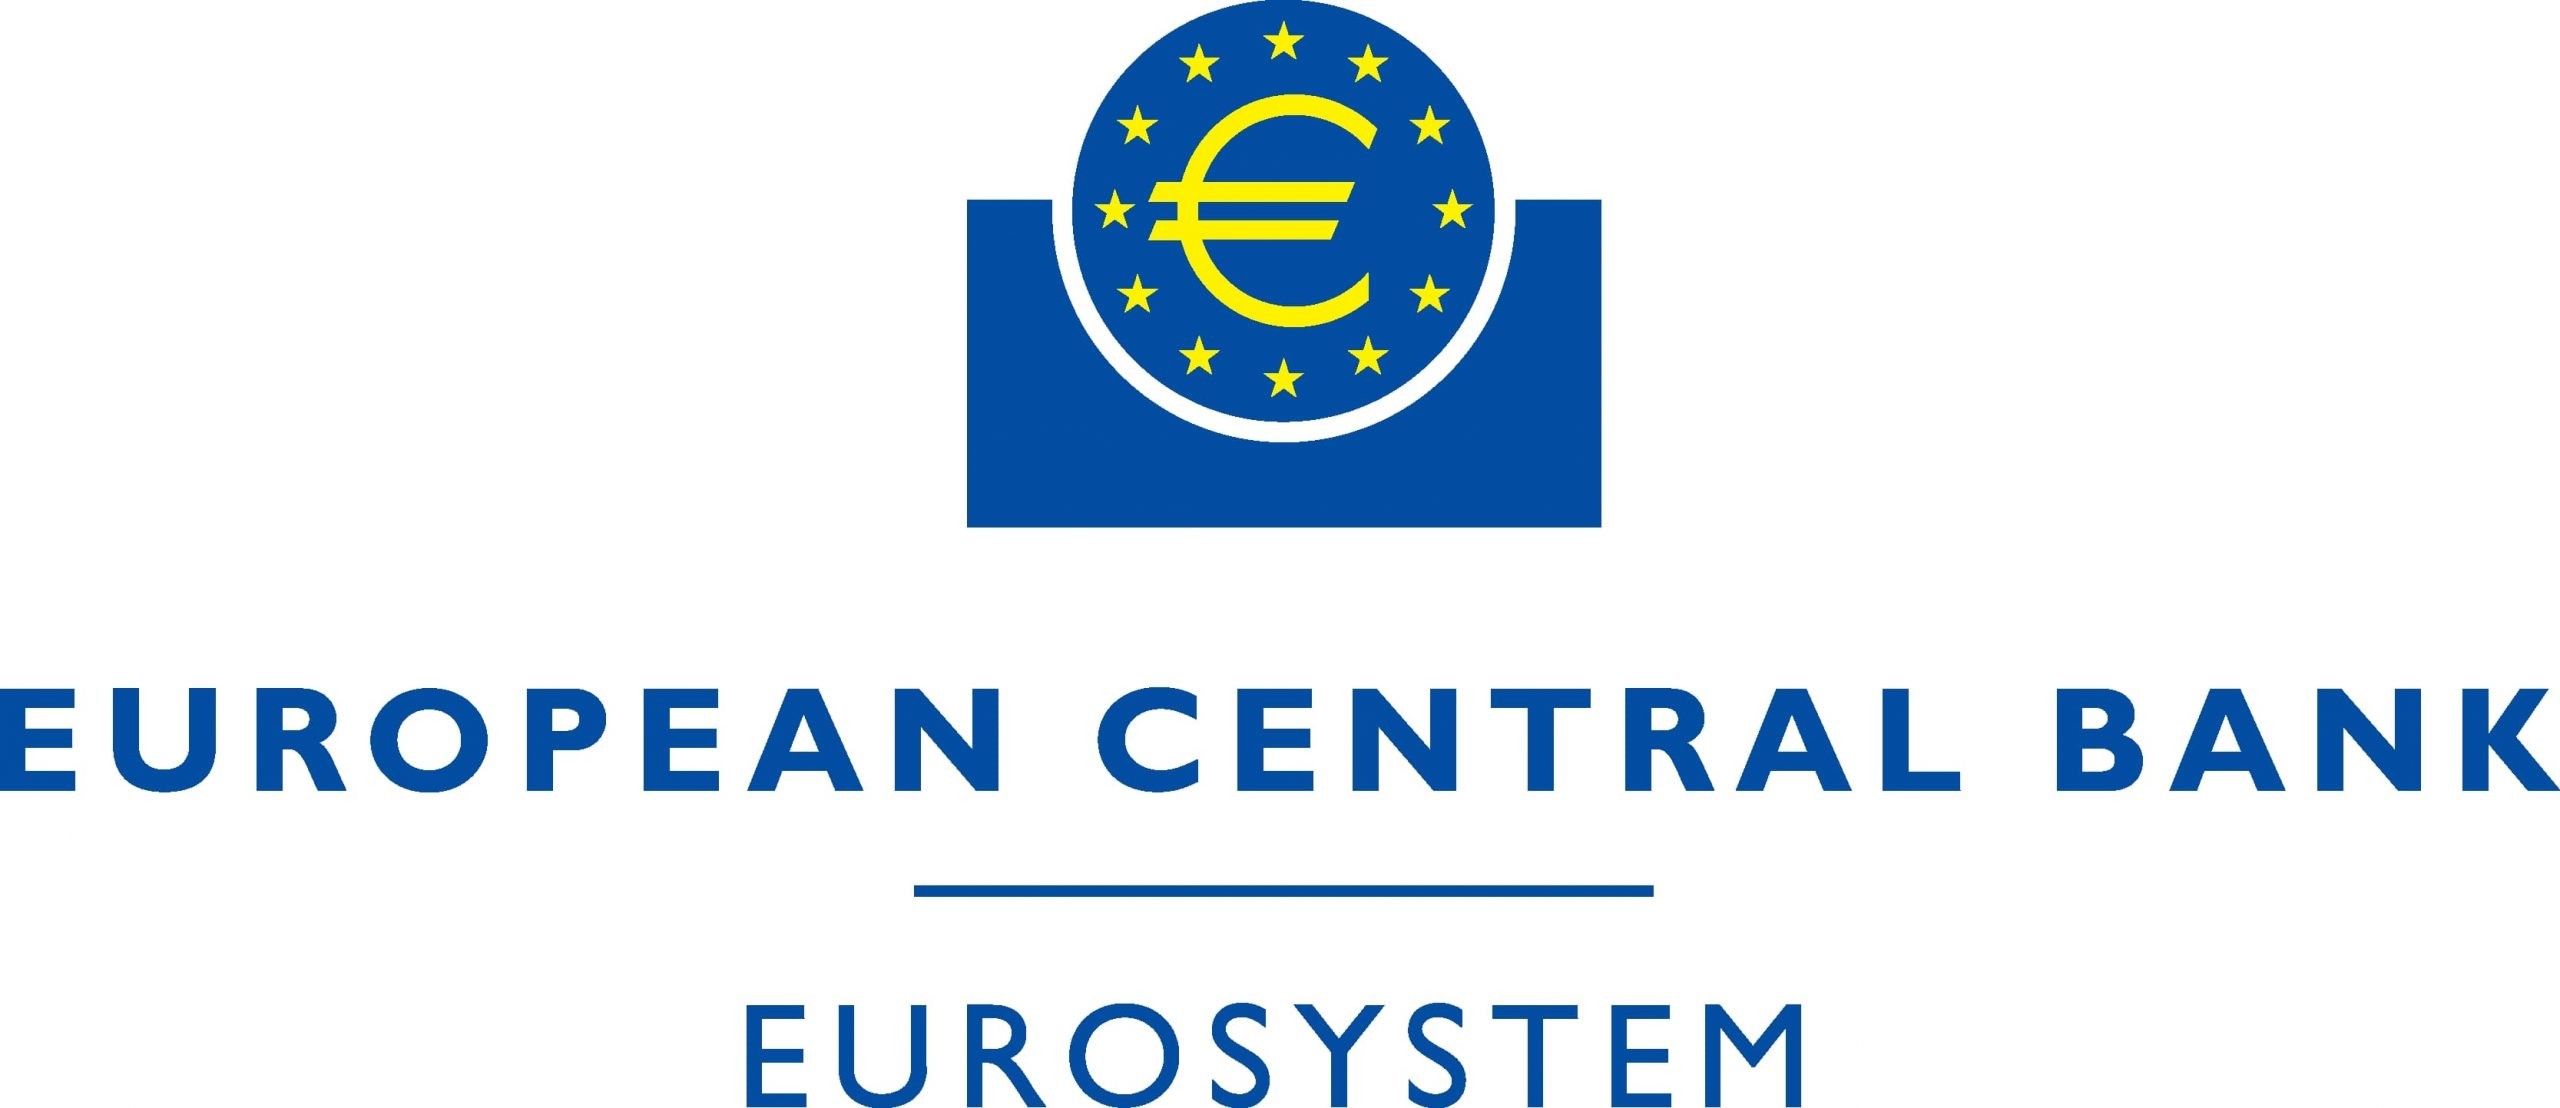 European Central Bank logo.